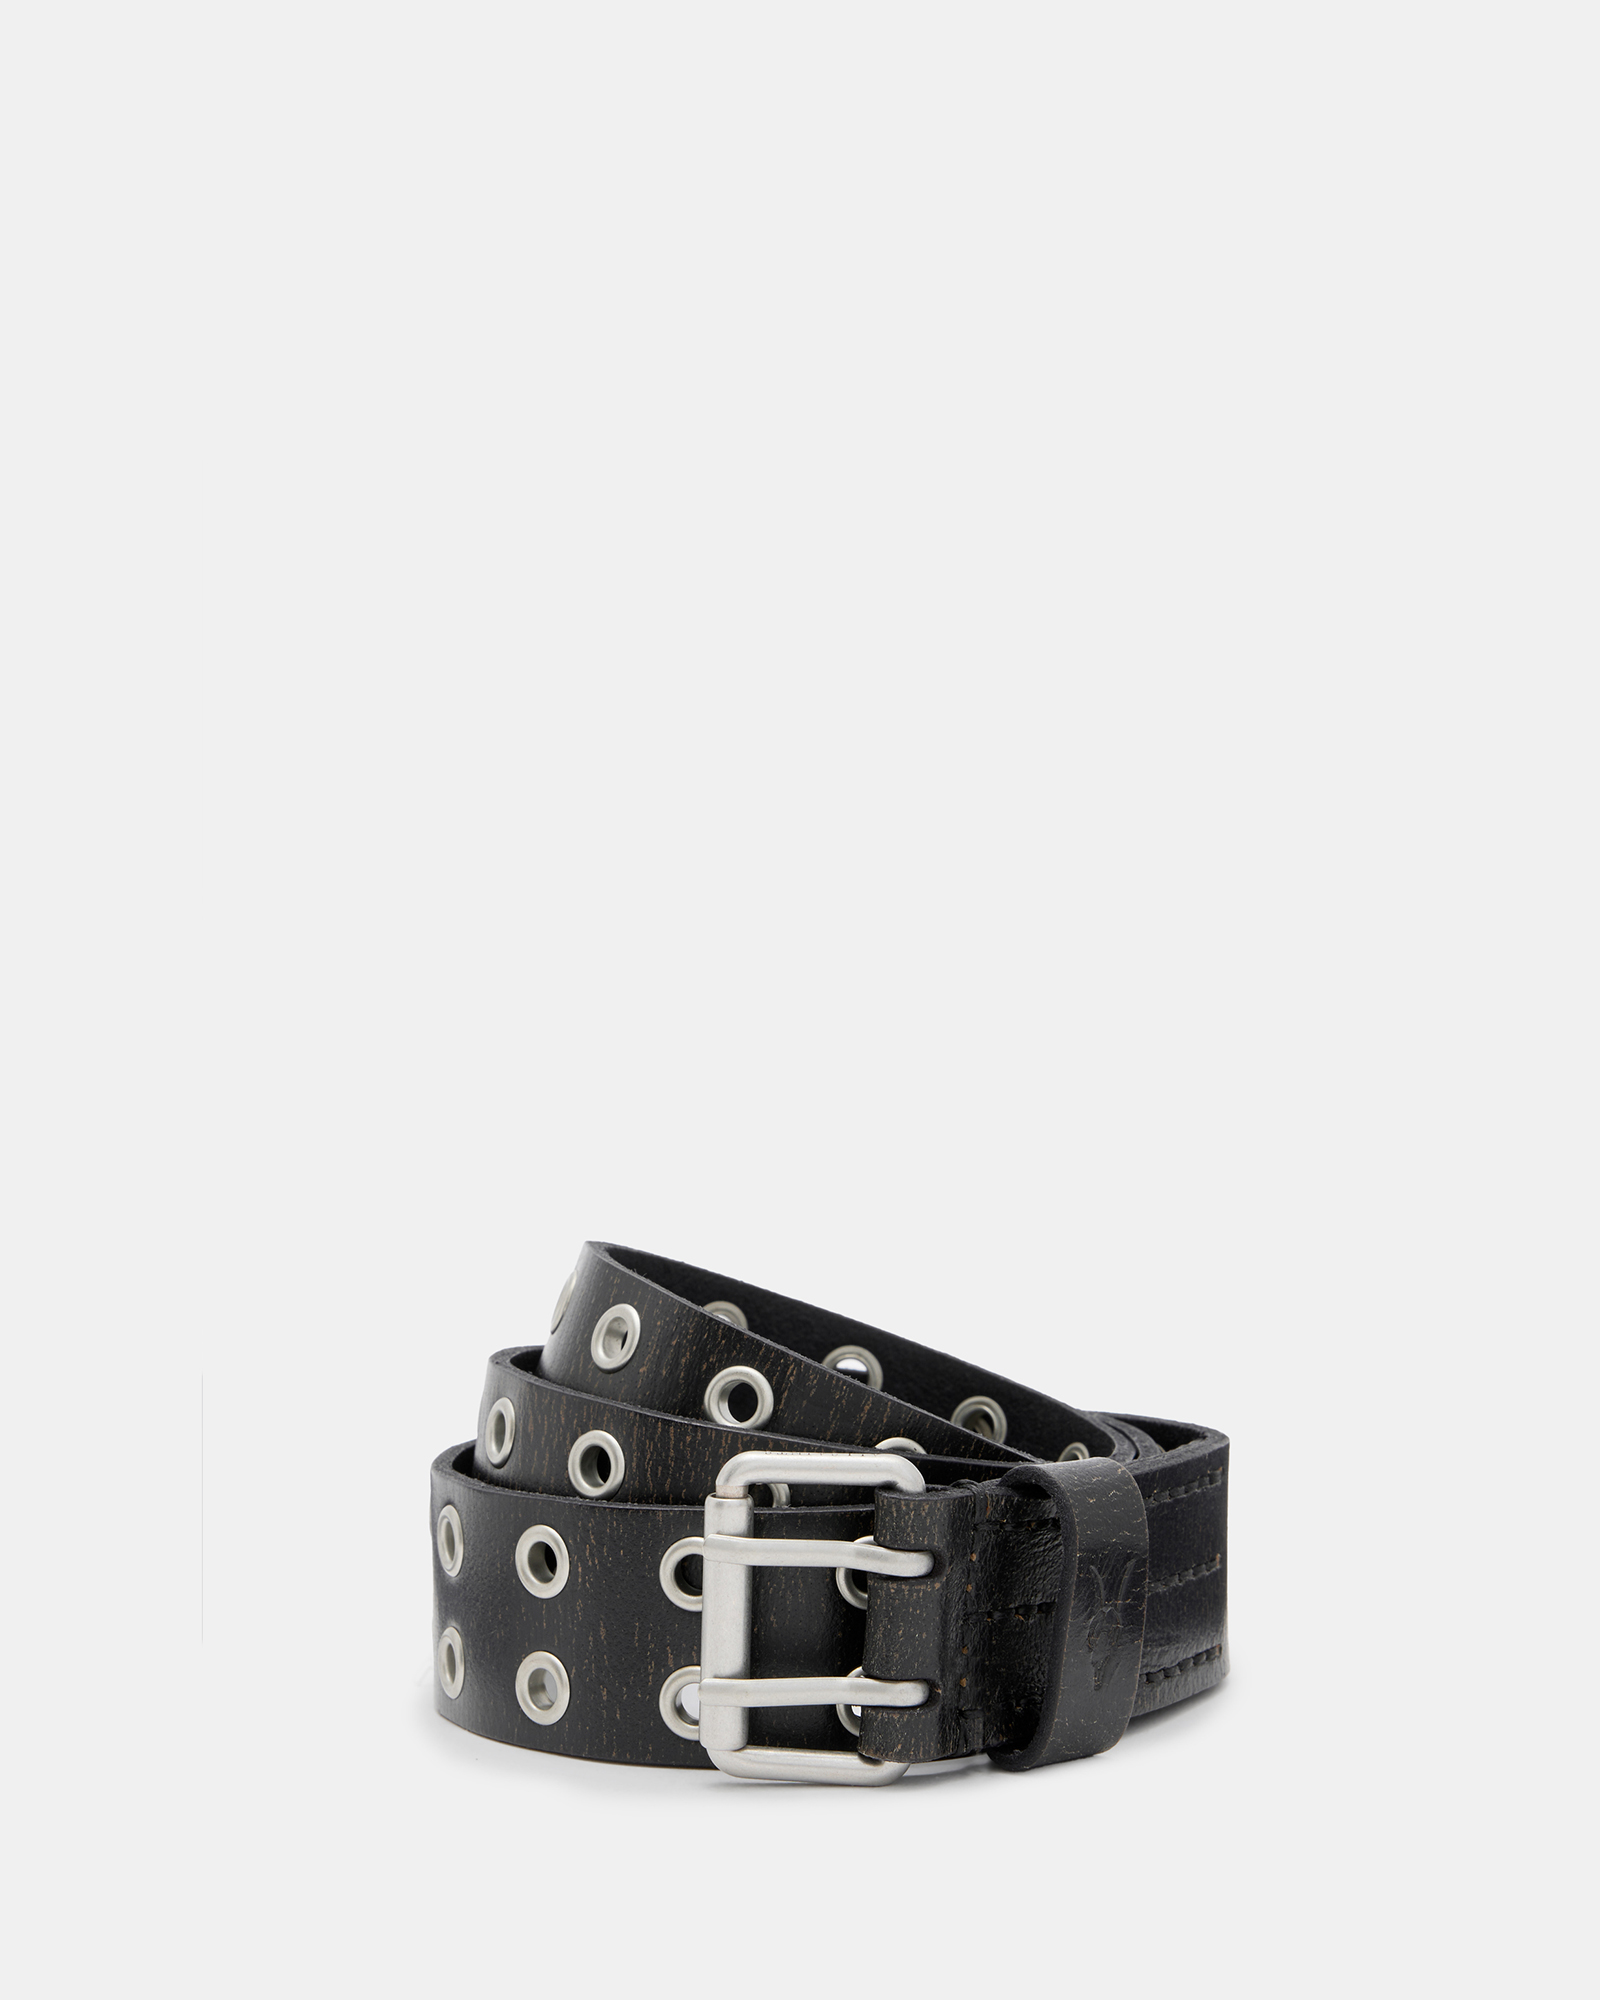 AllSaints Sturge Textured Leather Eyelet Belt,, Black, Size: